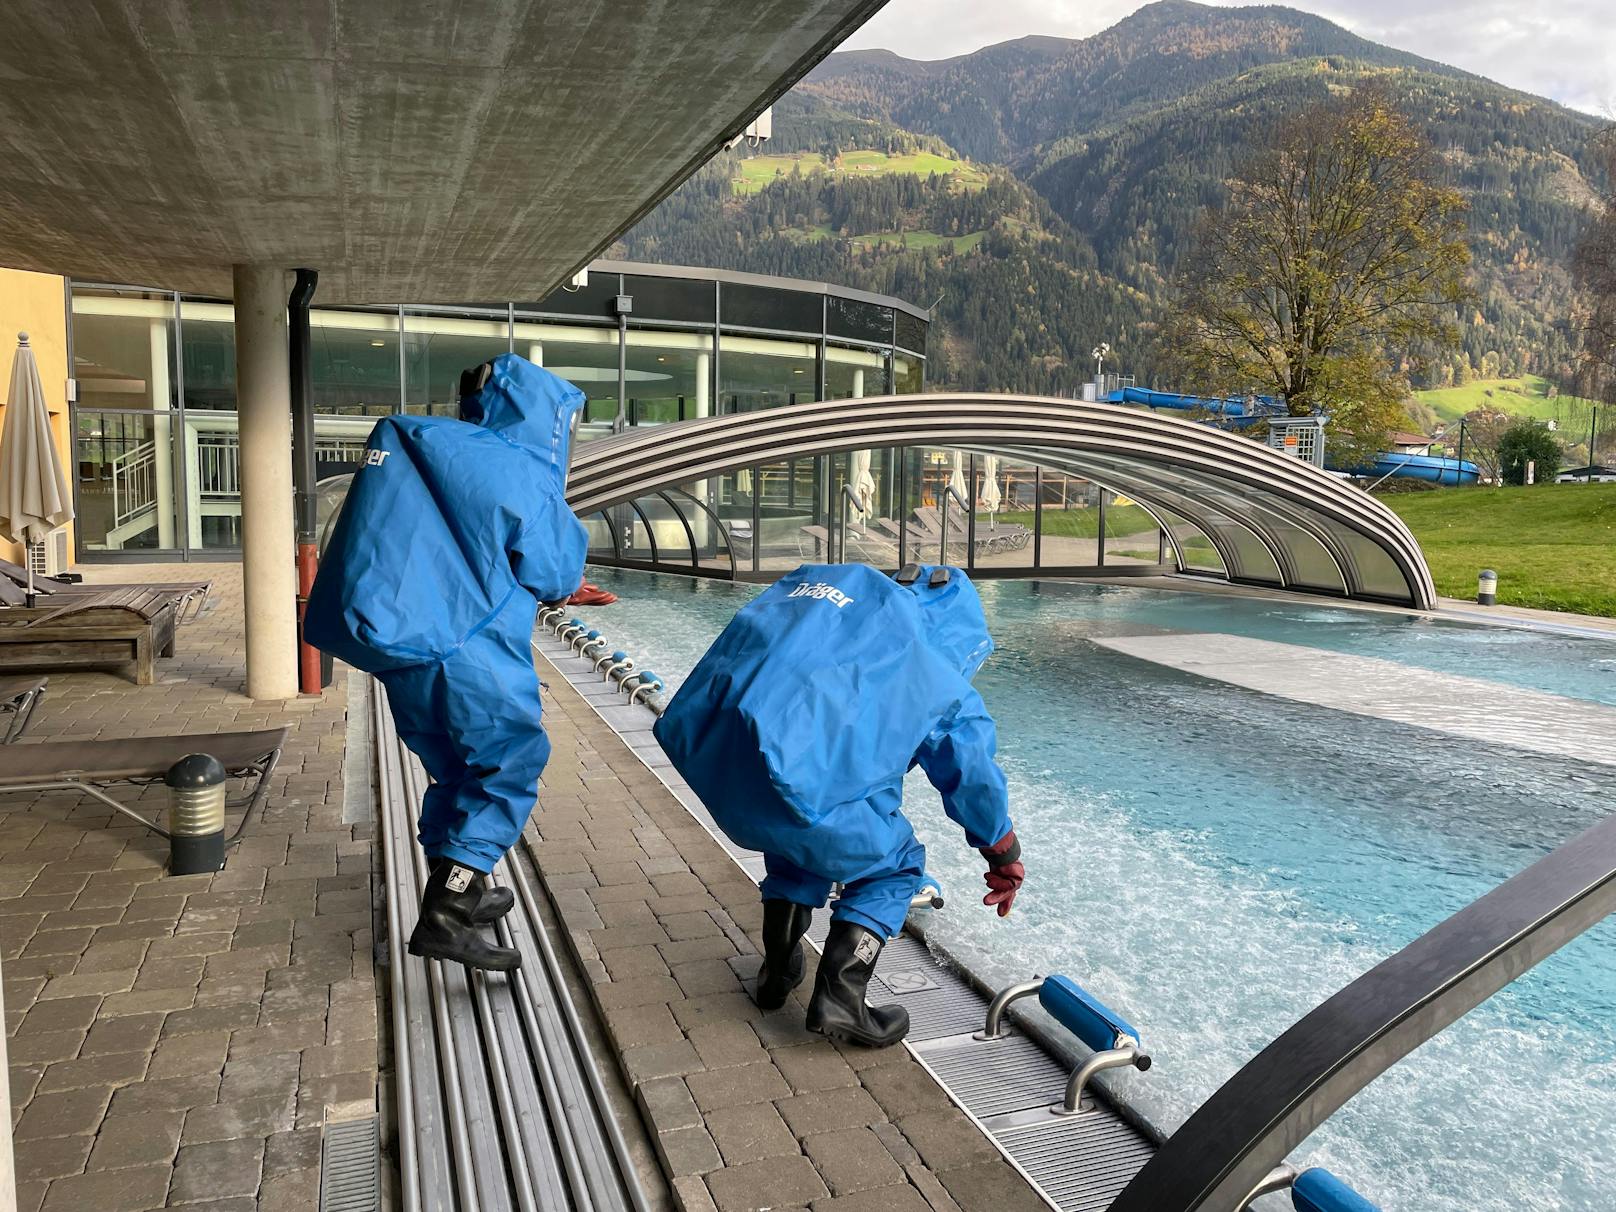 Ein Chlorgas-Austritt in einem Hallenbad im Tiroler Fügen hat mehrere Verletzte gefordert. Die Feuerwehr reagierte mit einem Großeinsatz.